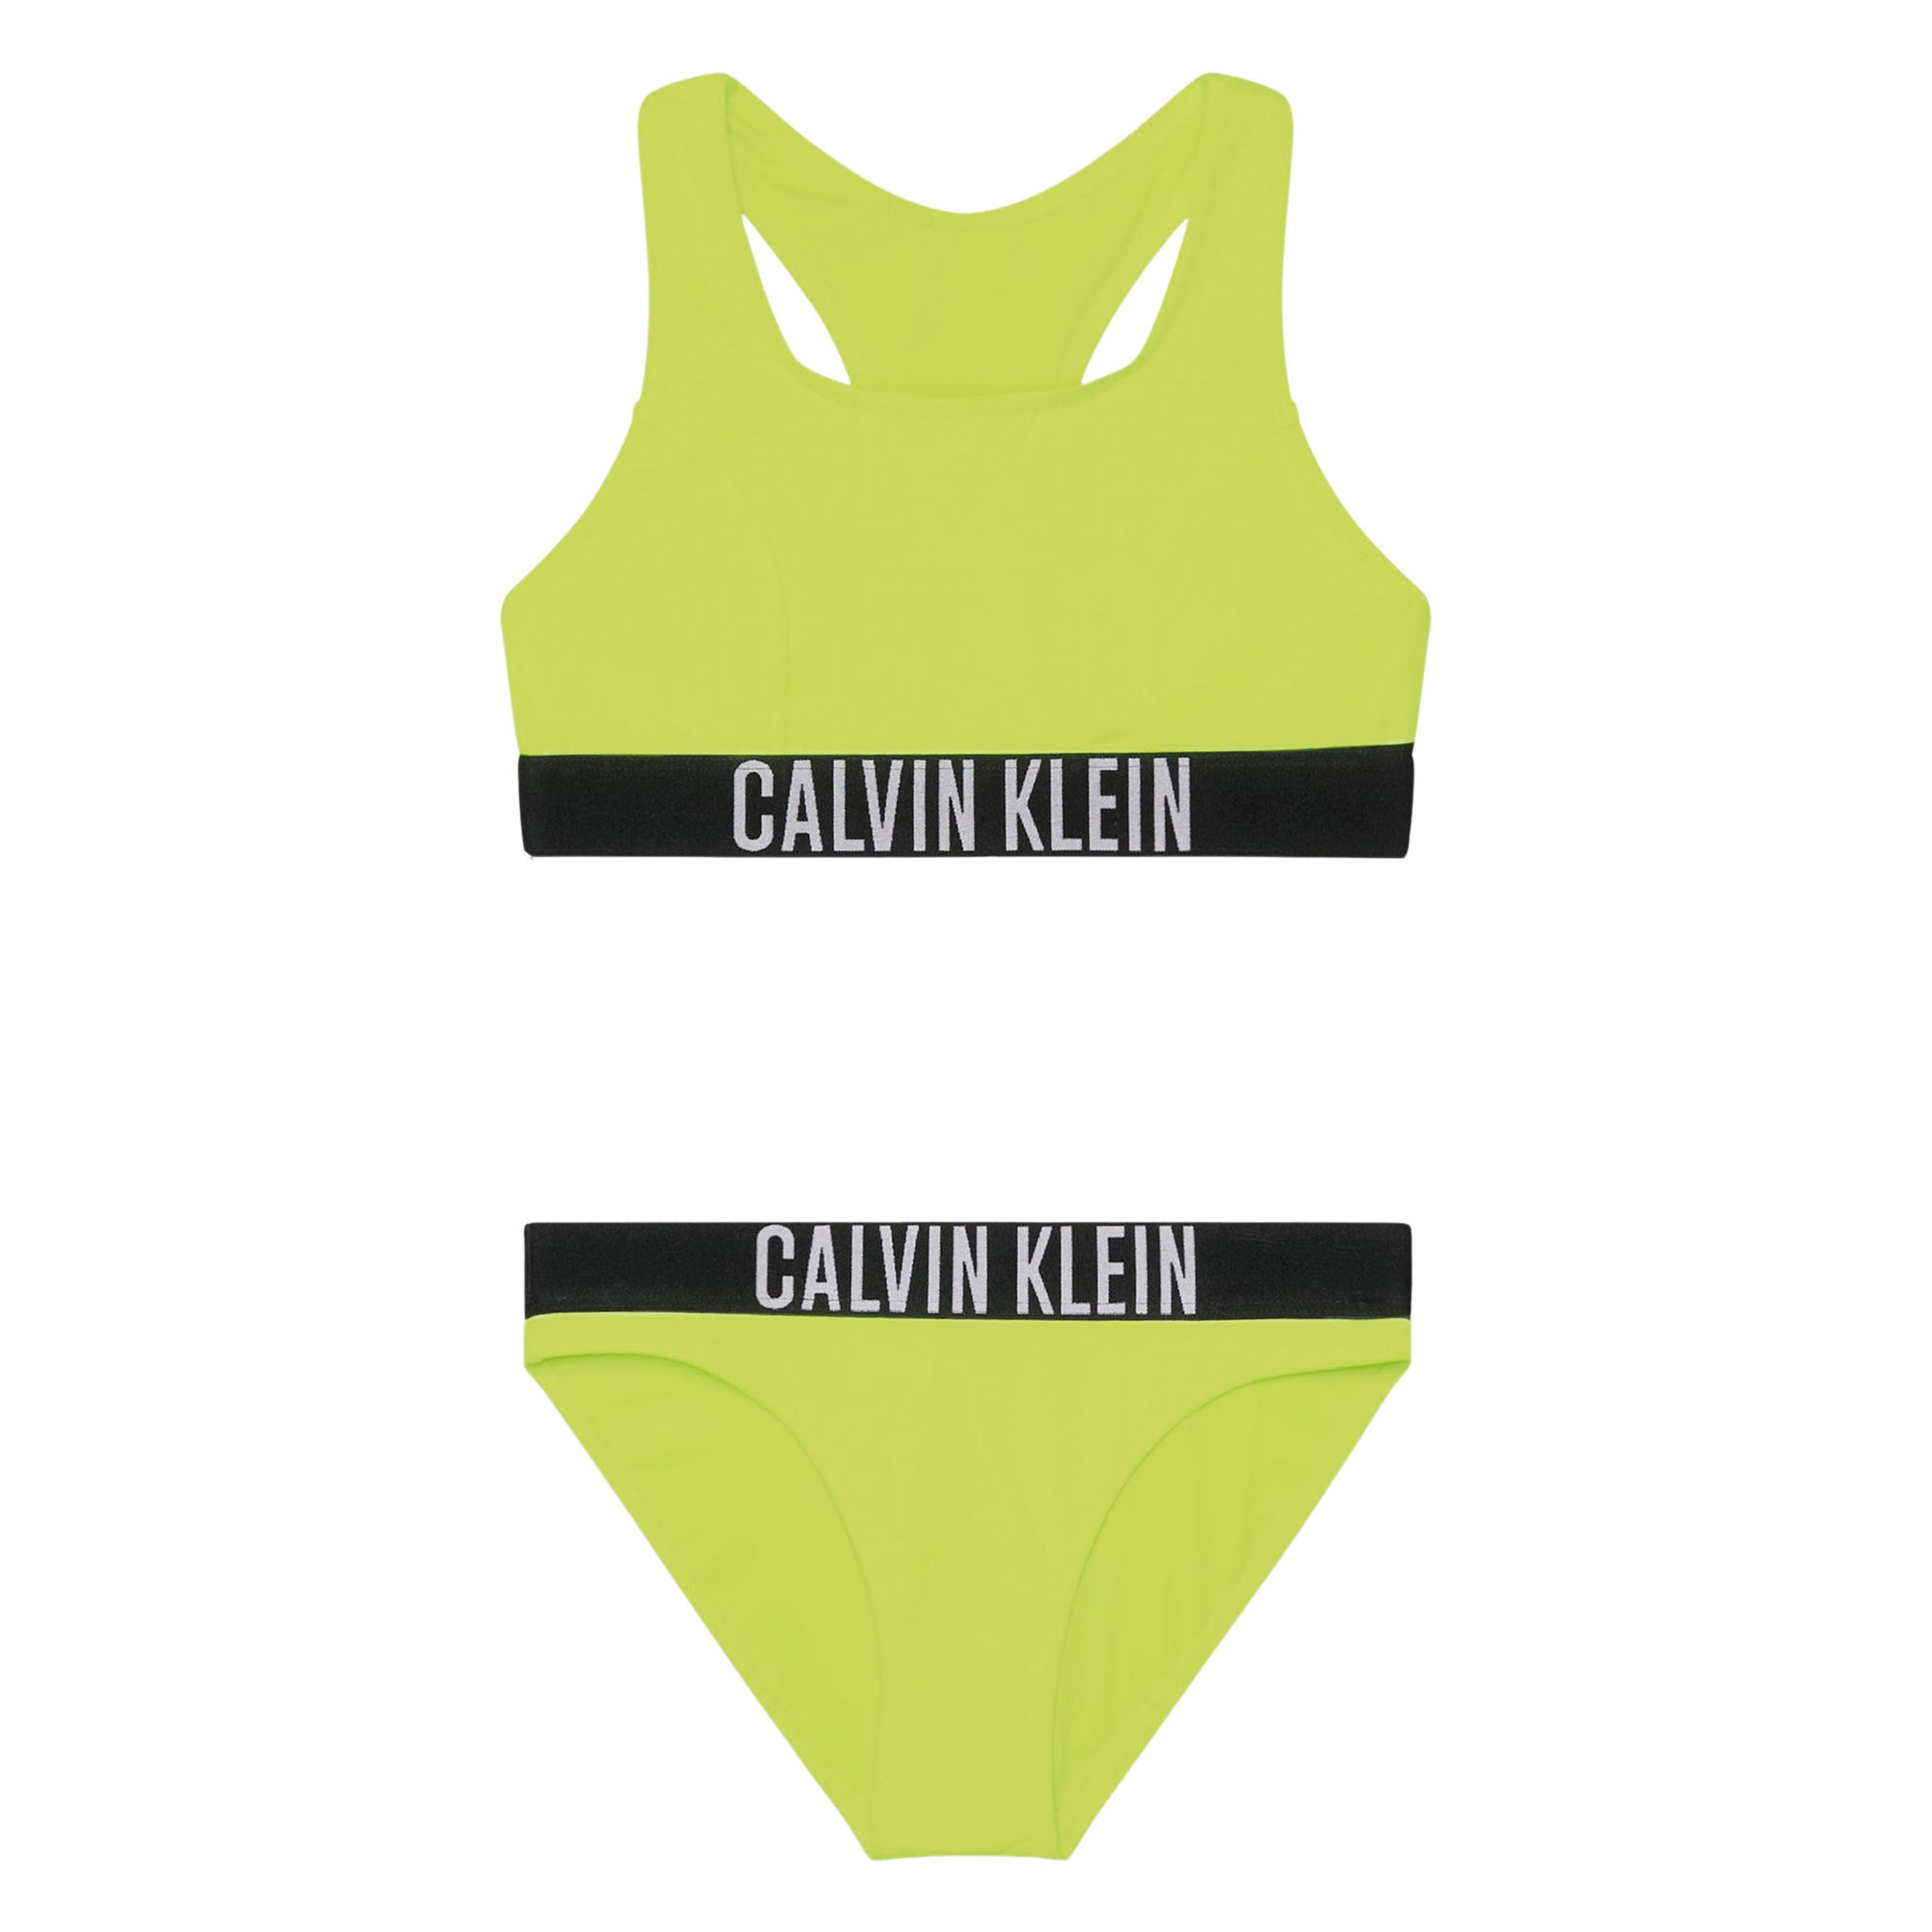 Calvin Klein Bralette Bikini Meisjes 2402271150 1 | | 4466301111115455